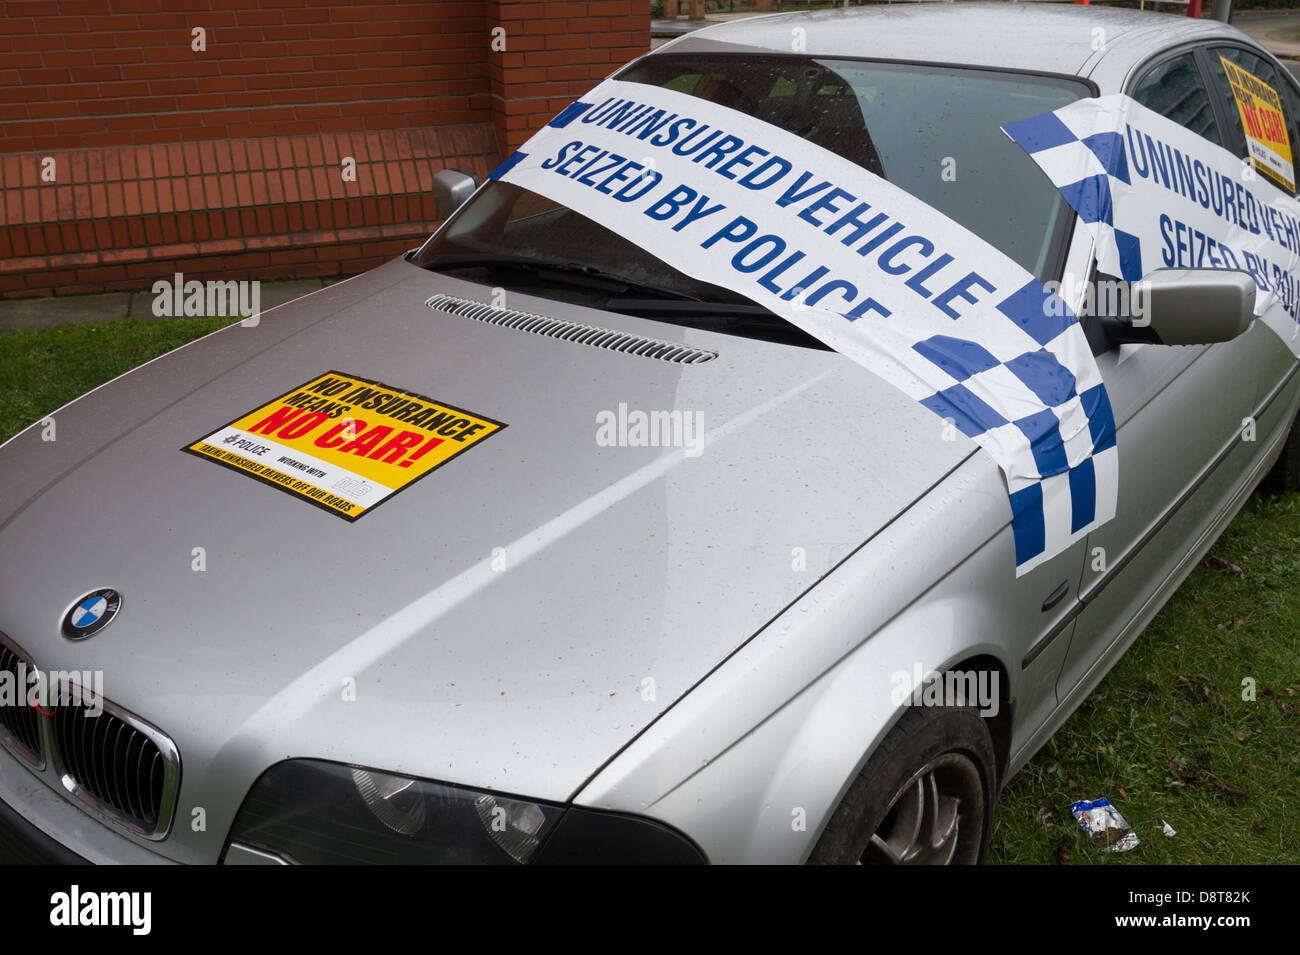 Grippaggio assicurato motore BMW al di fuori della stazione di polizia Foto Stock